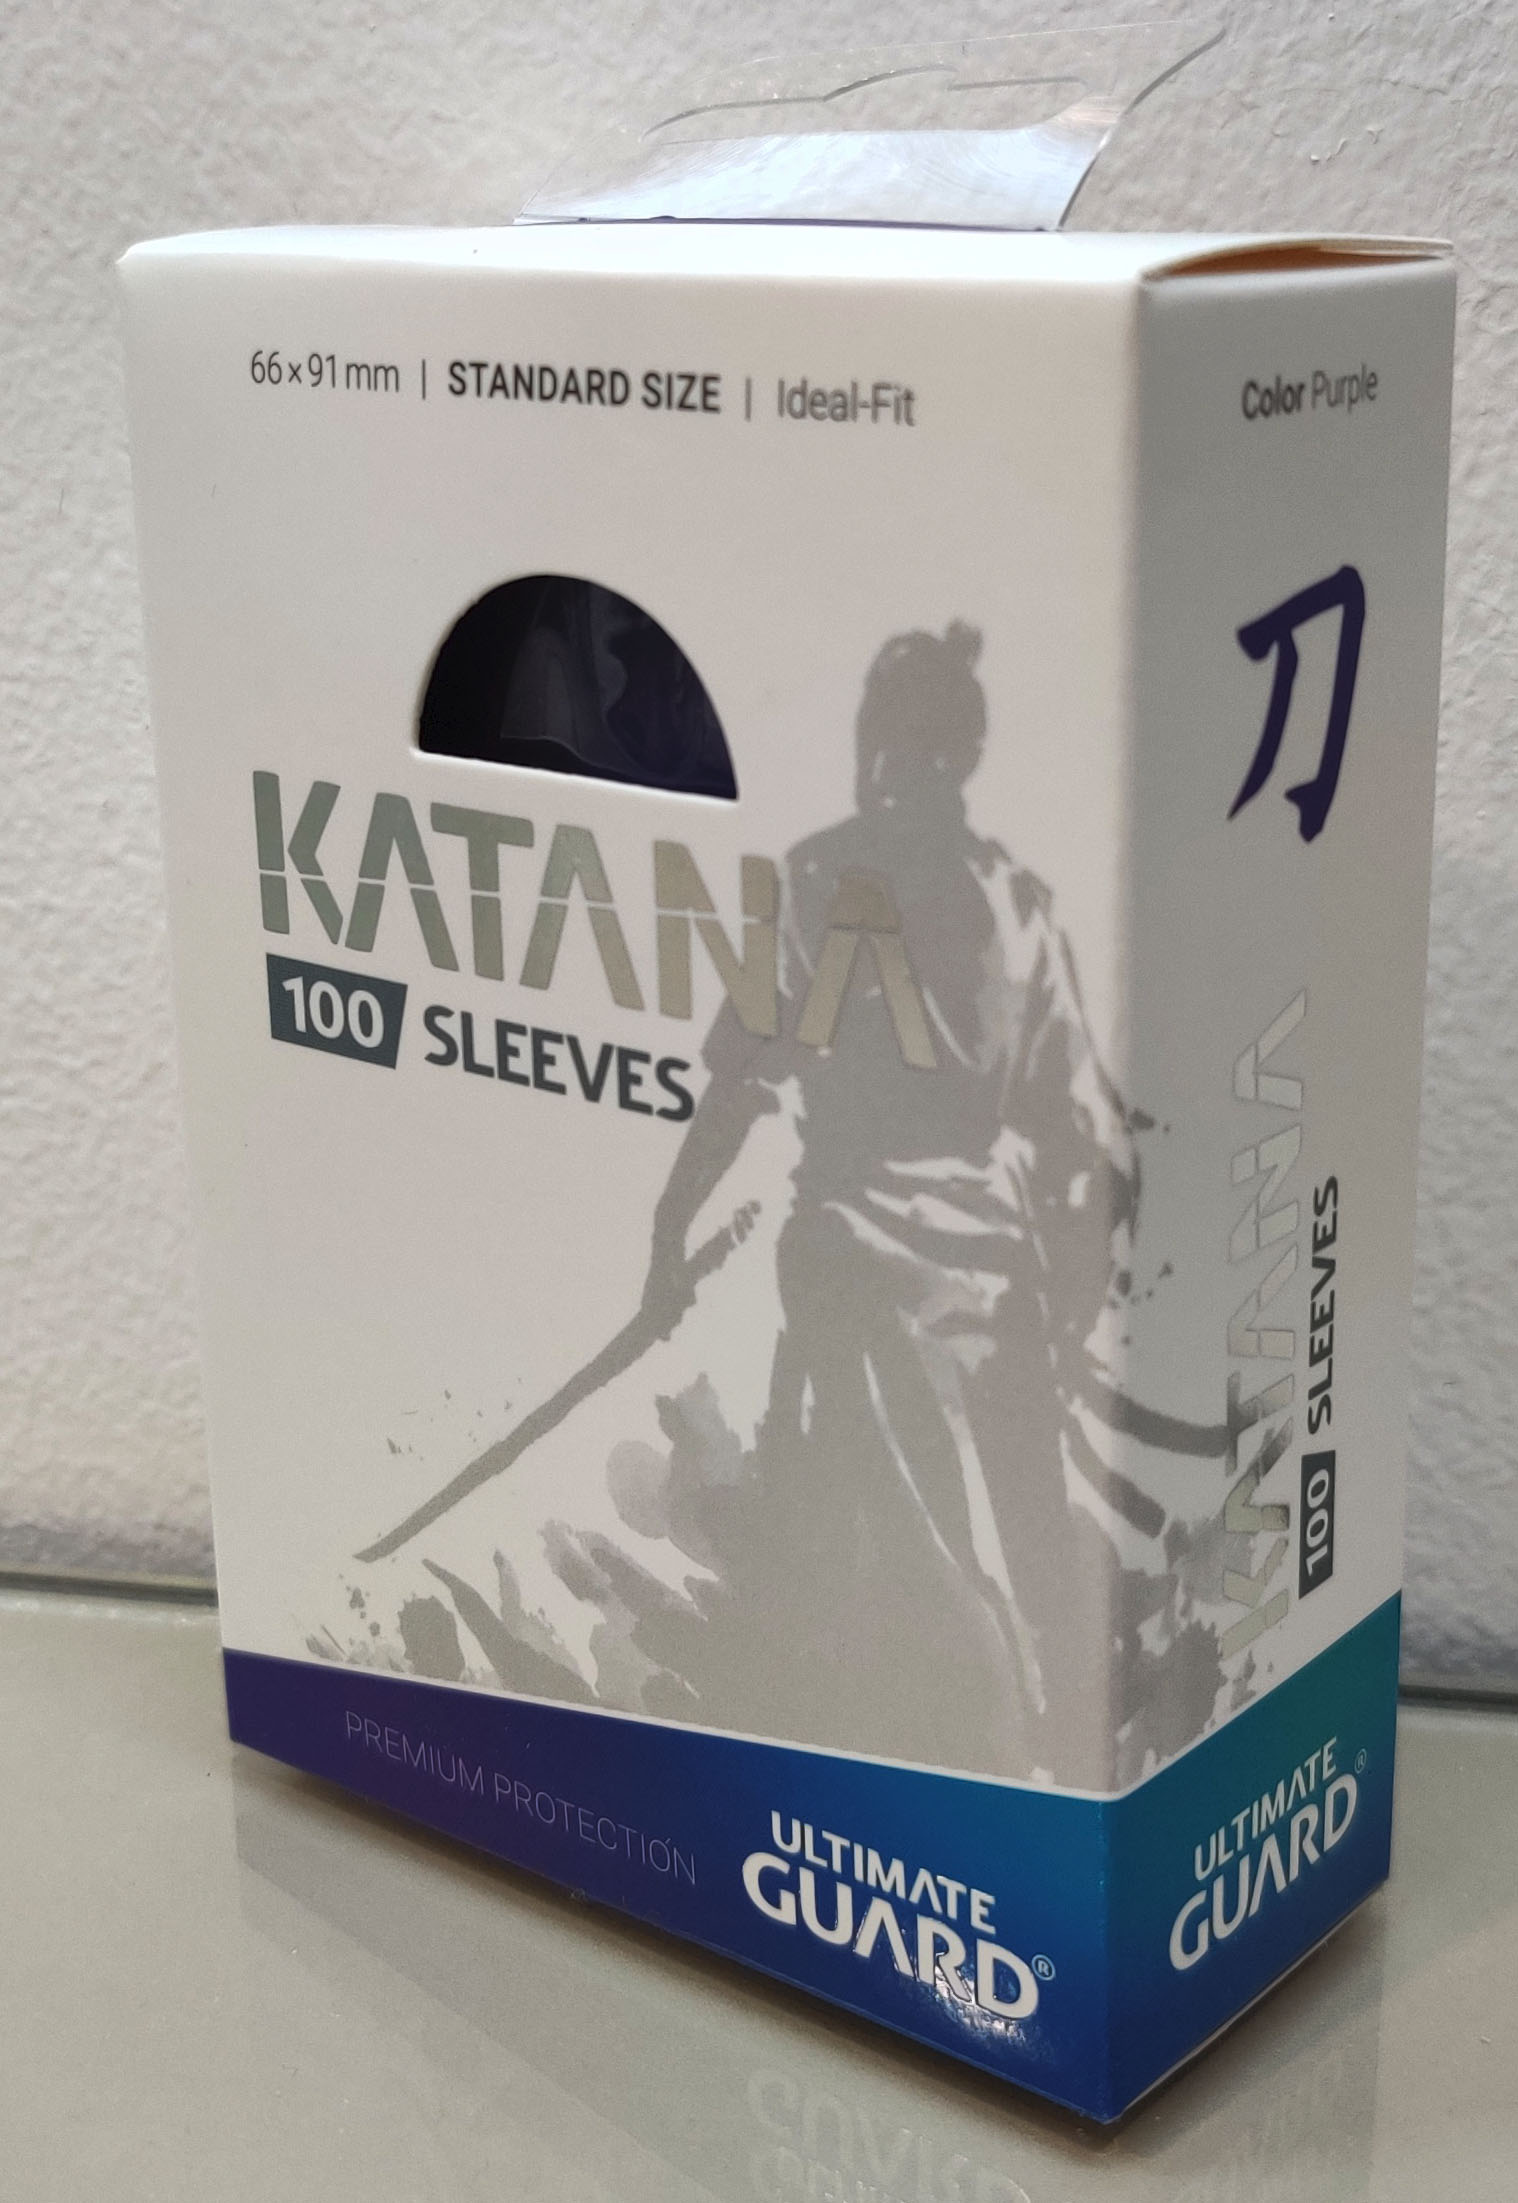 Katana Sleeves, Black, Standard, Ideal-Fit, 100